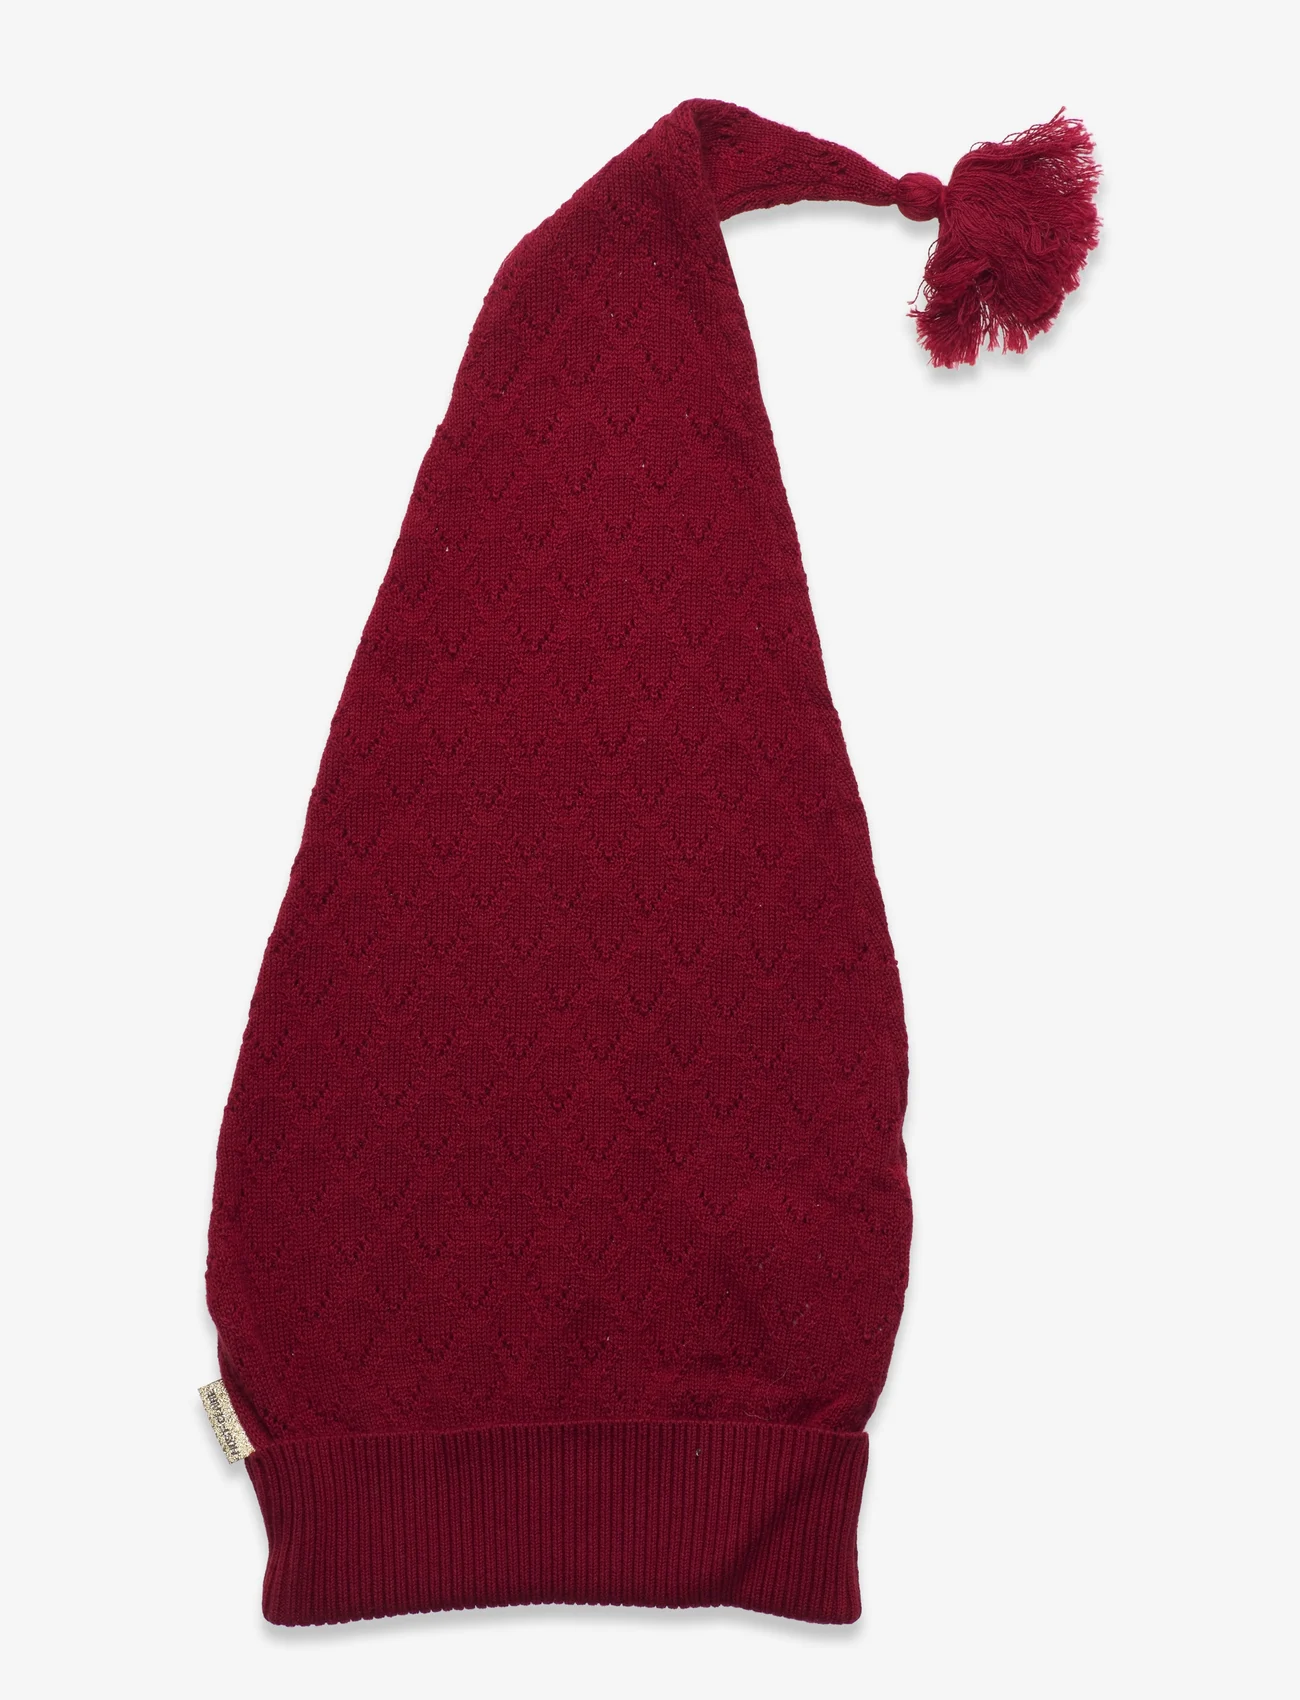 Hust & Claire - Fifi - Christmas hat - kostuumaccessoires - teaberry - 1